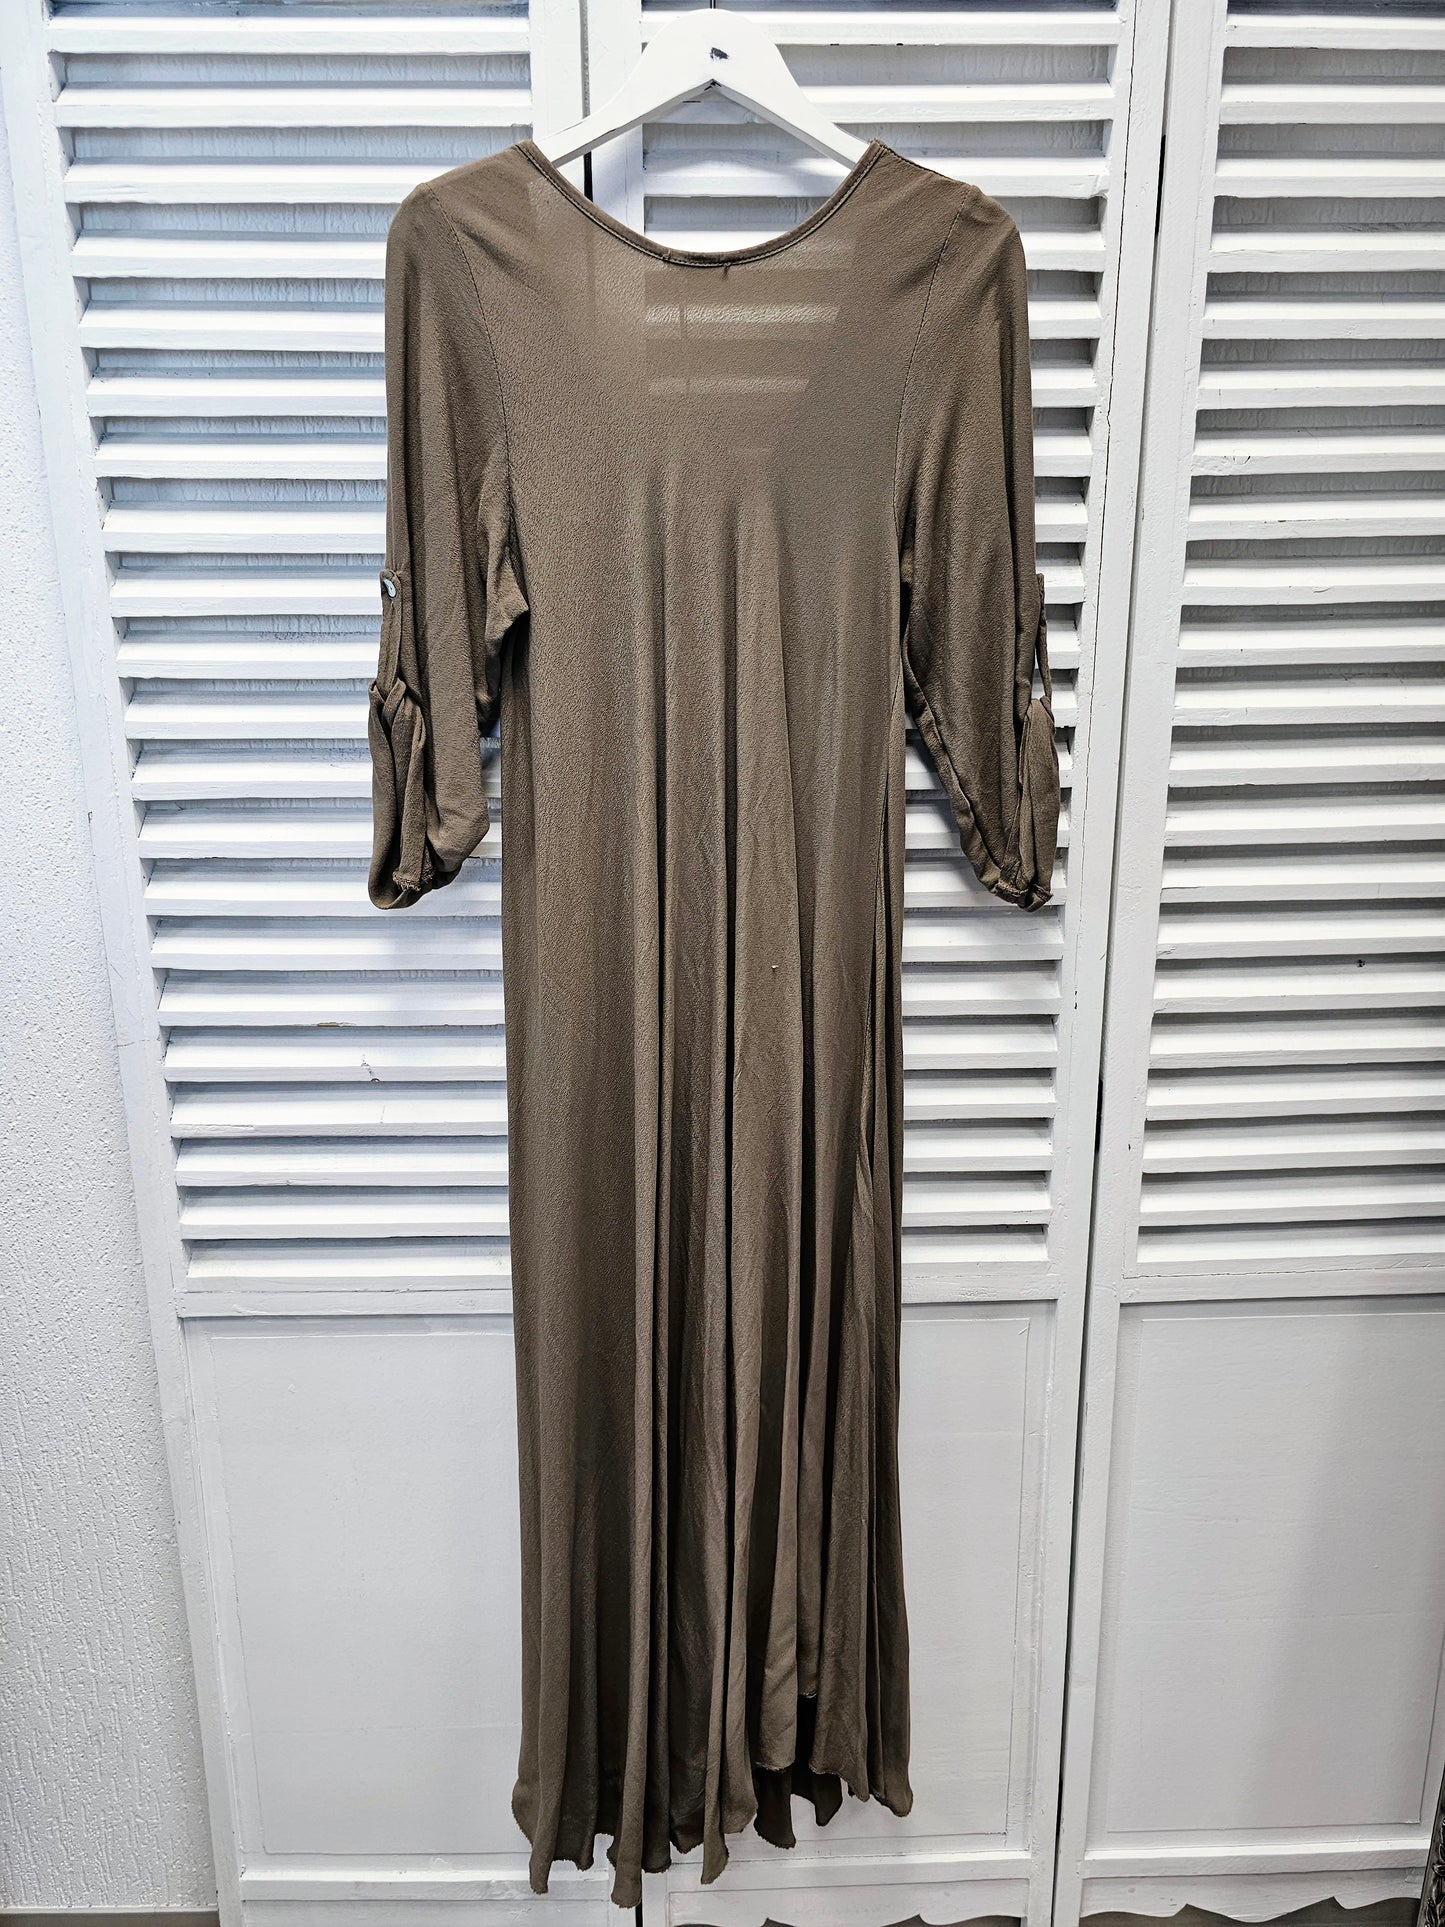 Langes Kleid in Braun mit höhen verstellbaren Ärmeln